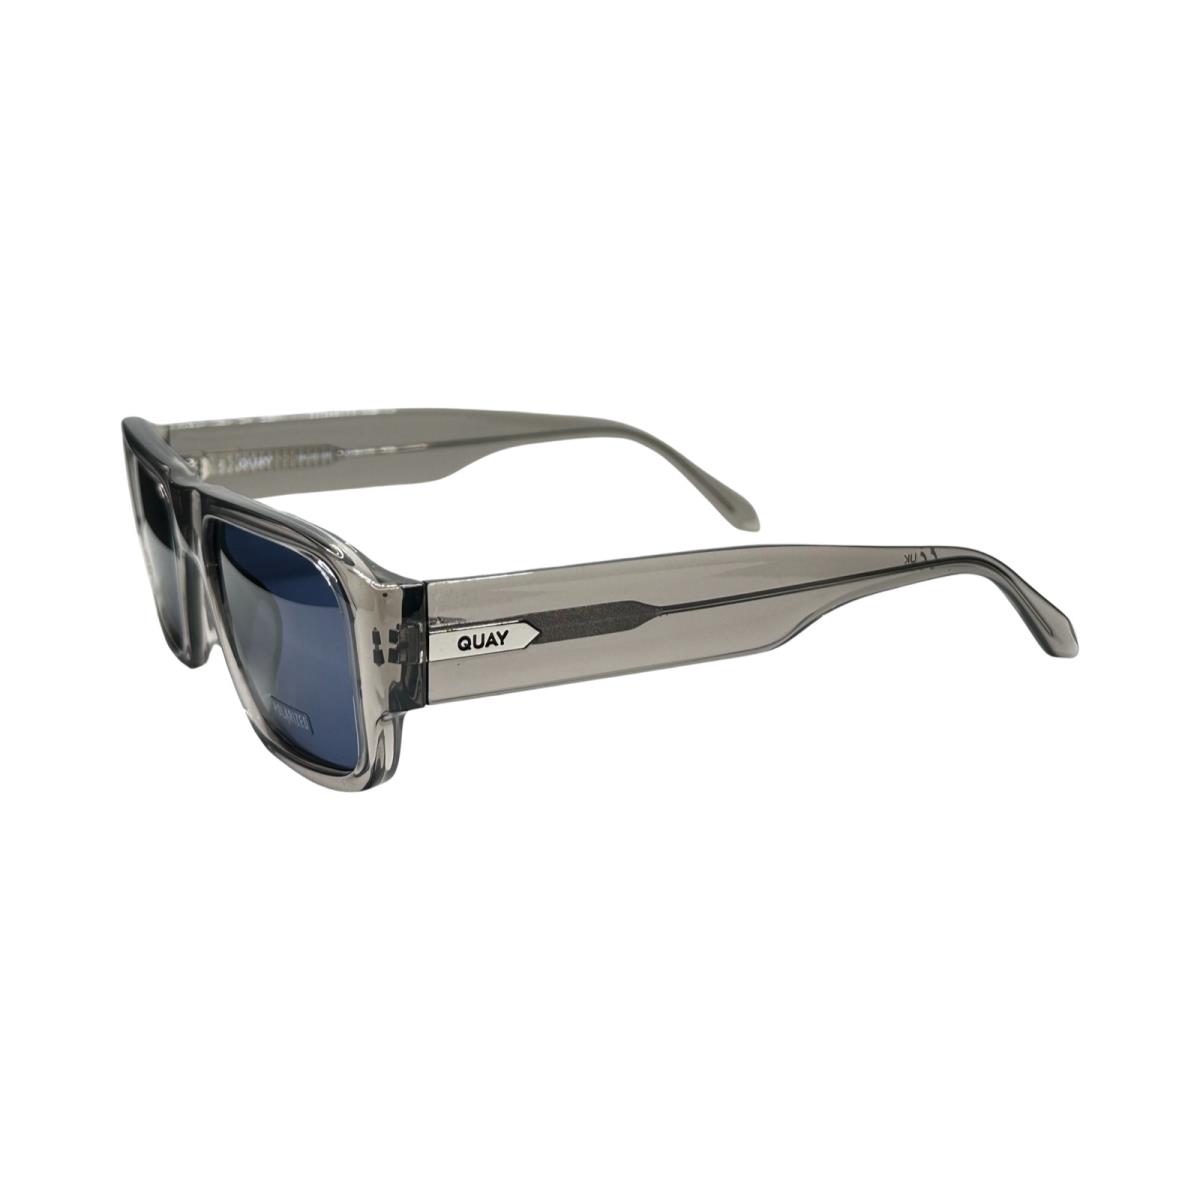 Quay Night Cap Sporty Designer Rectangle Sunglasses Polarized Lens